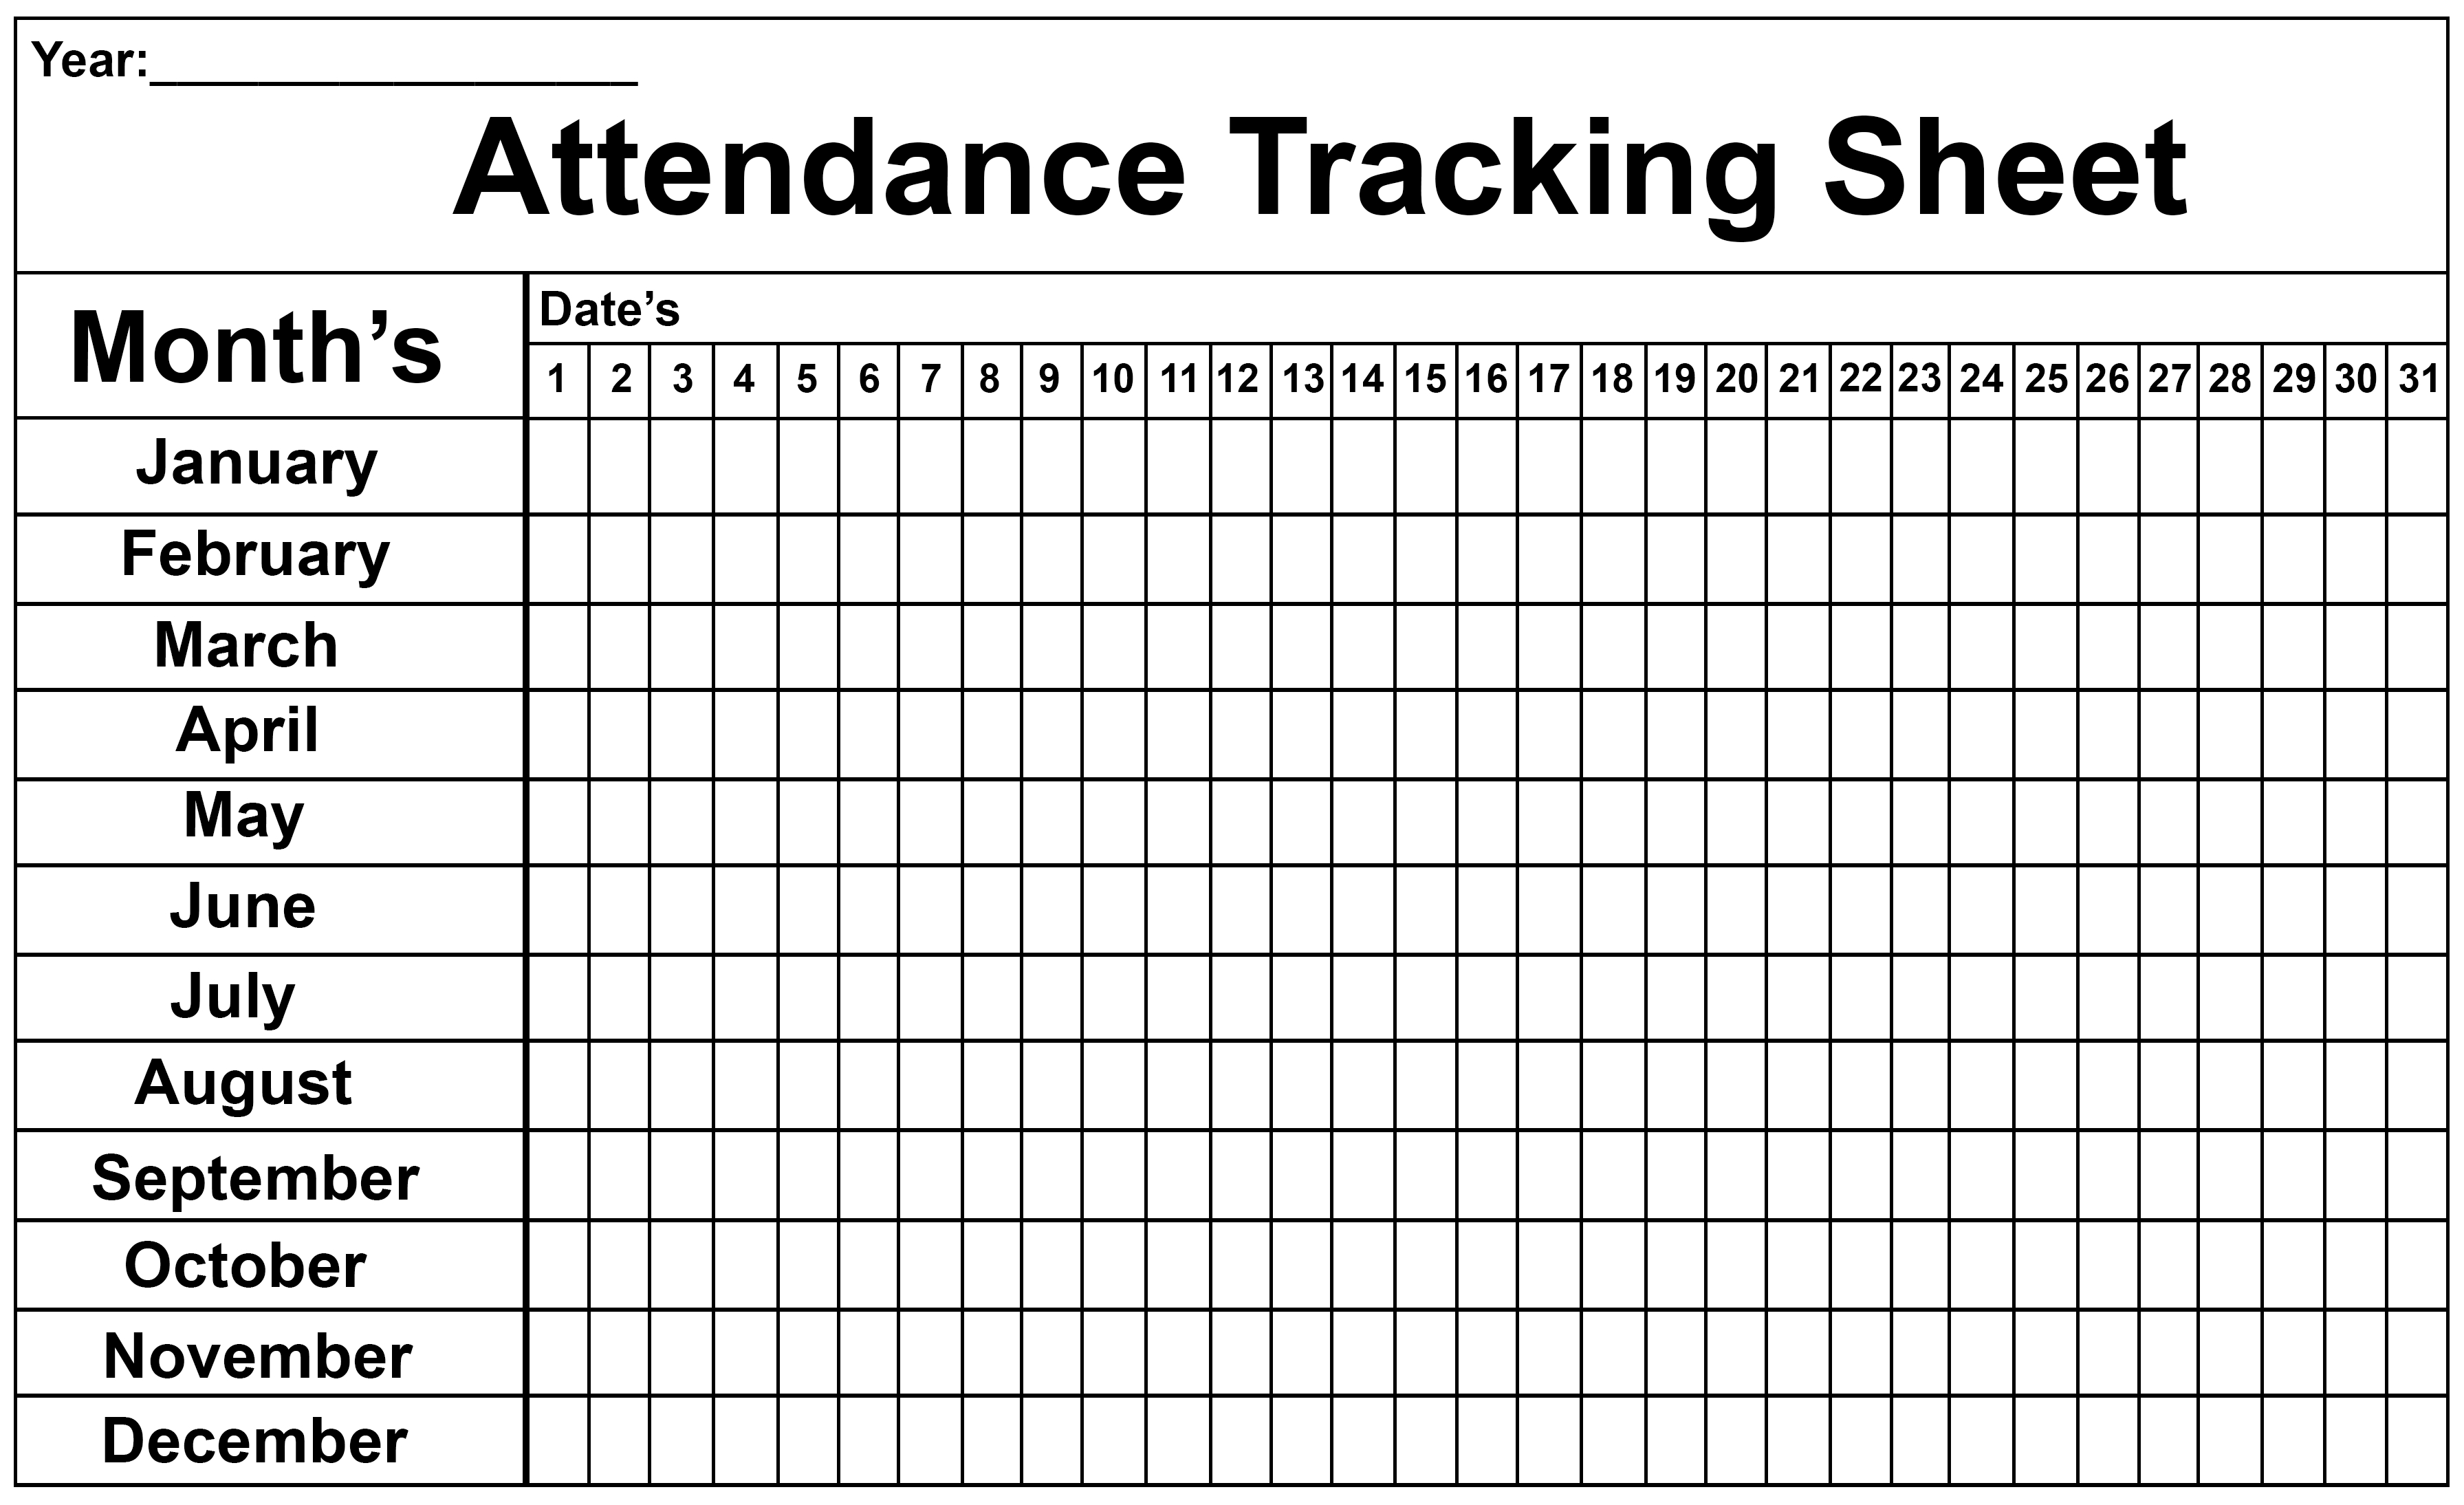 Employee Attendance Tracker Sheet 2019 | Printable Calendar Diy-Monthly Employee Attendance 2020